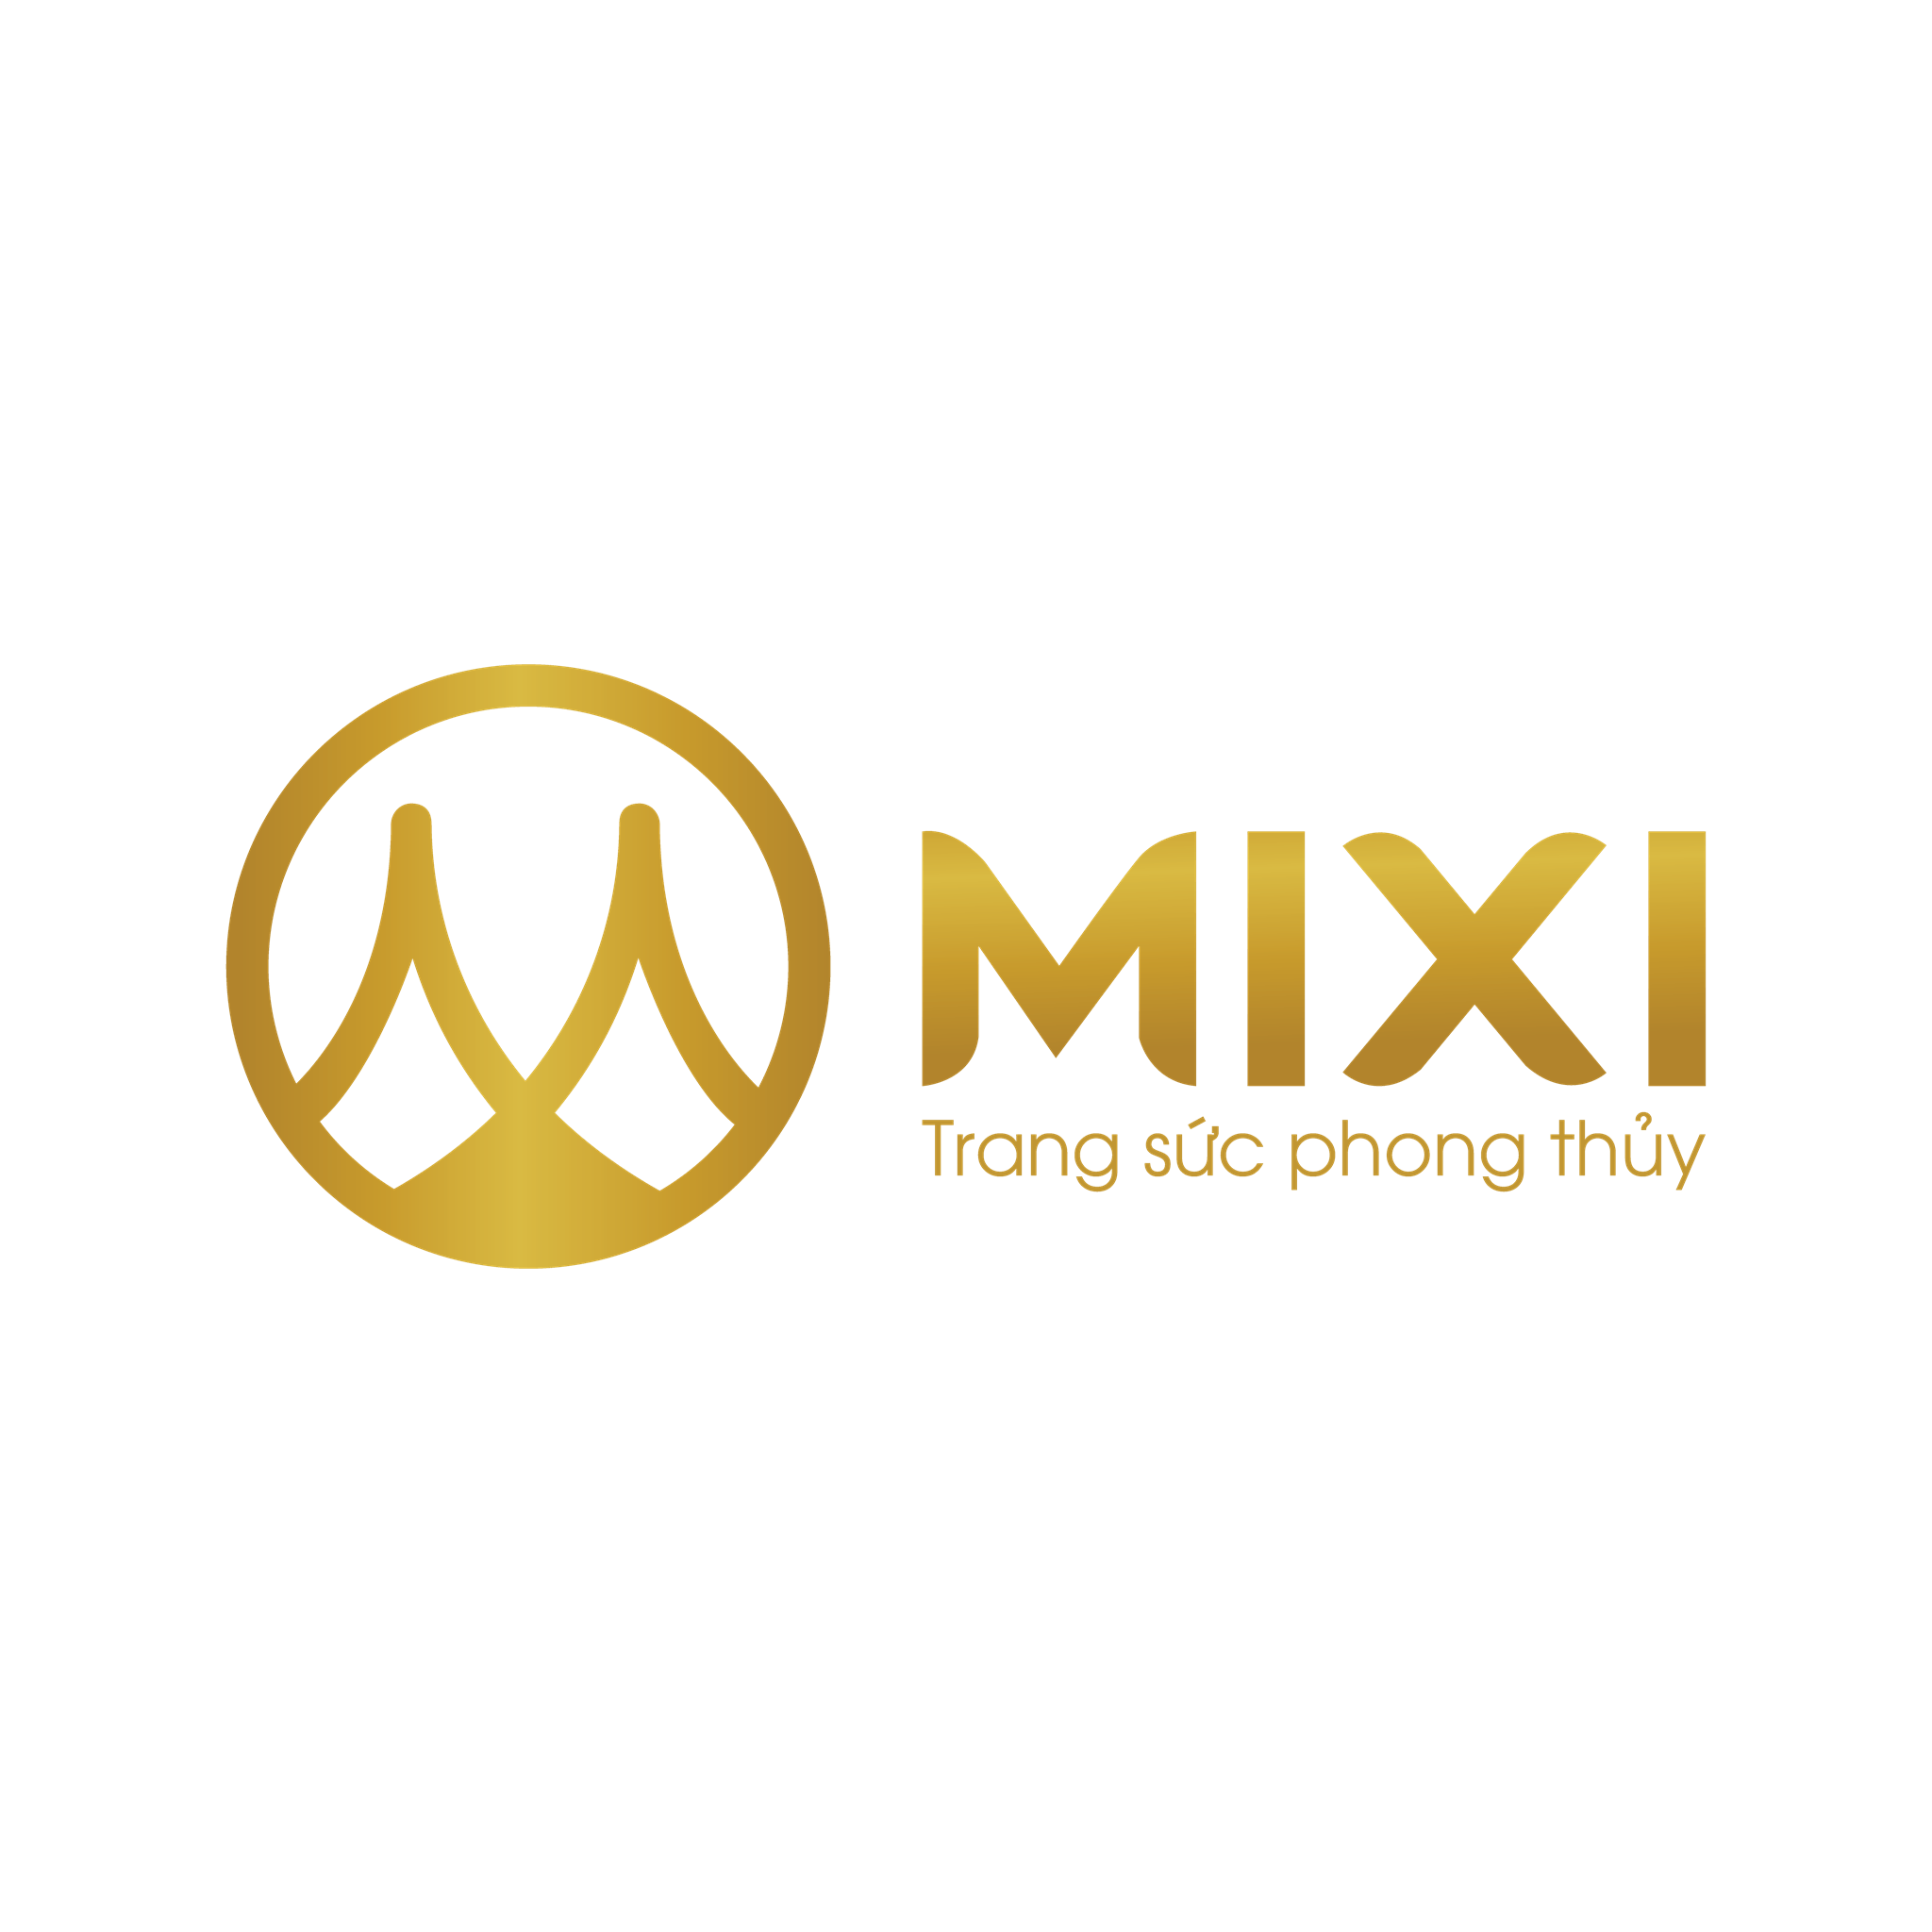 Mixi Logo - Tin Tuyển Dụng Nhân Viên Marketing Online - JobTest